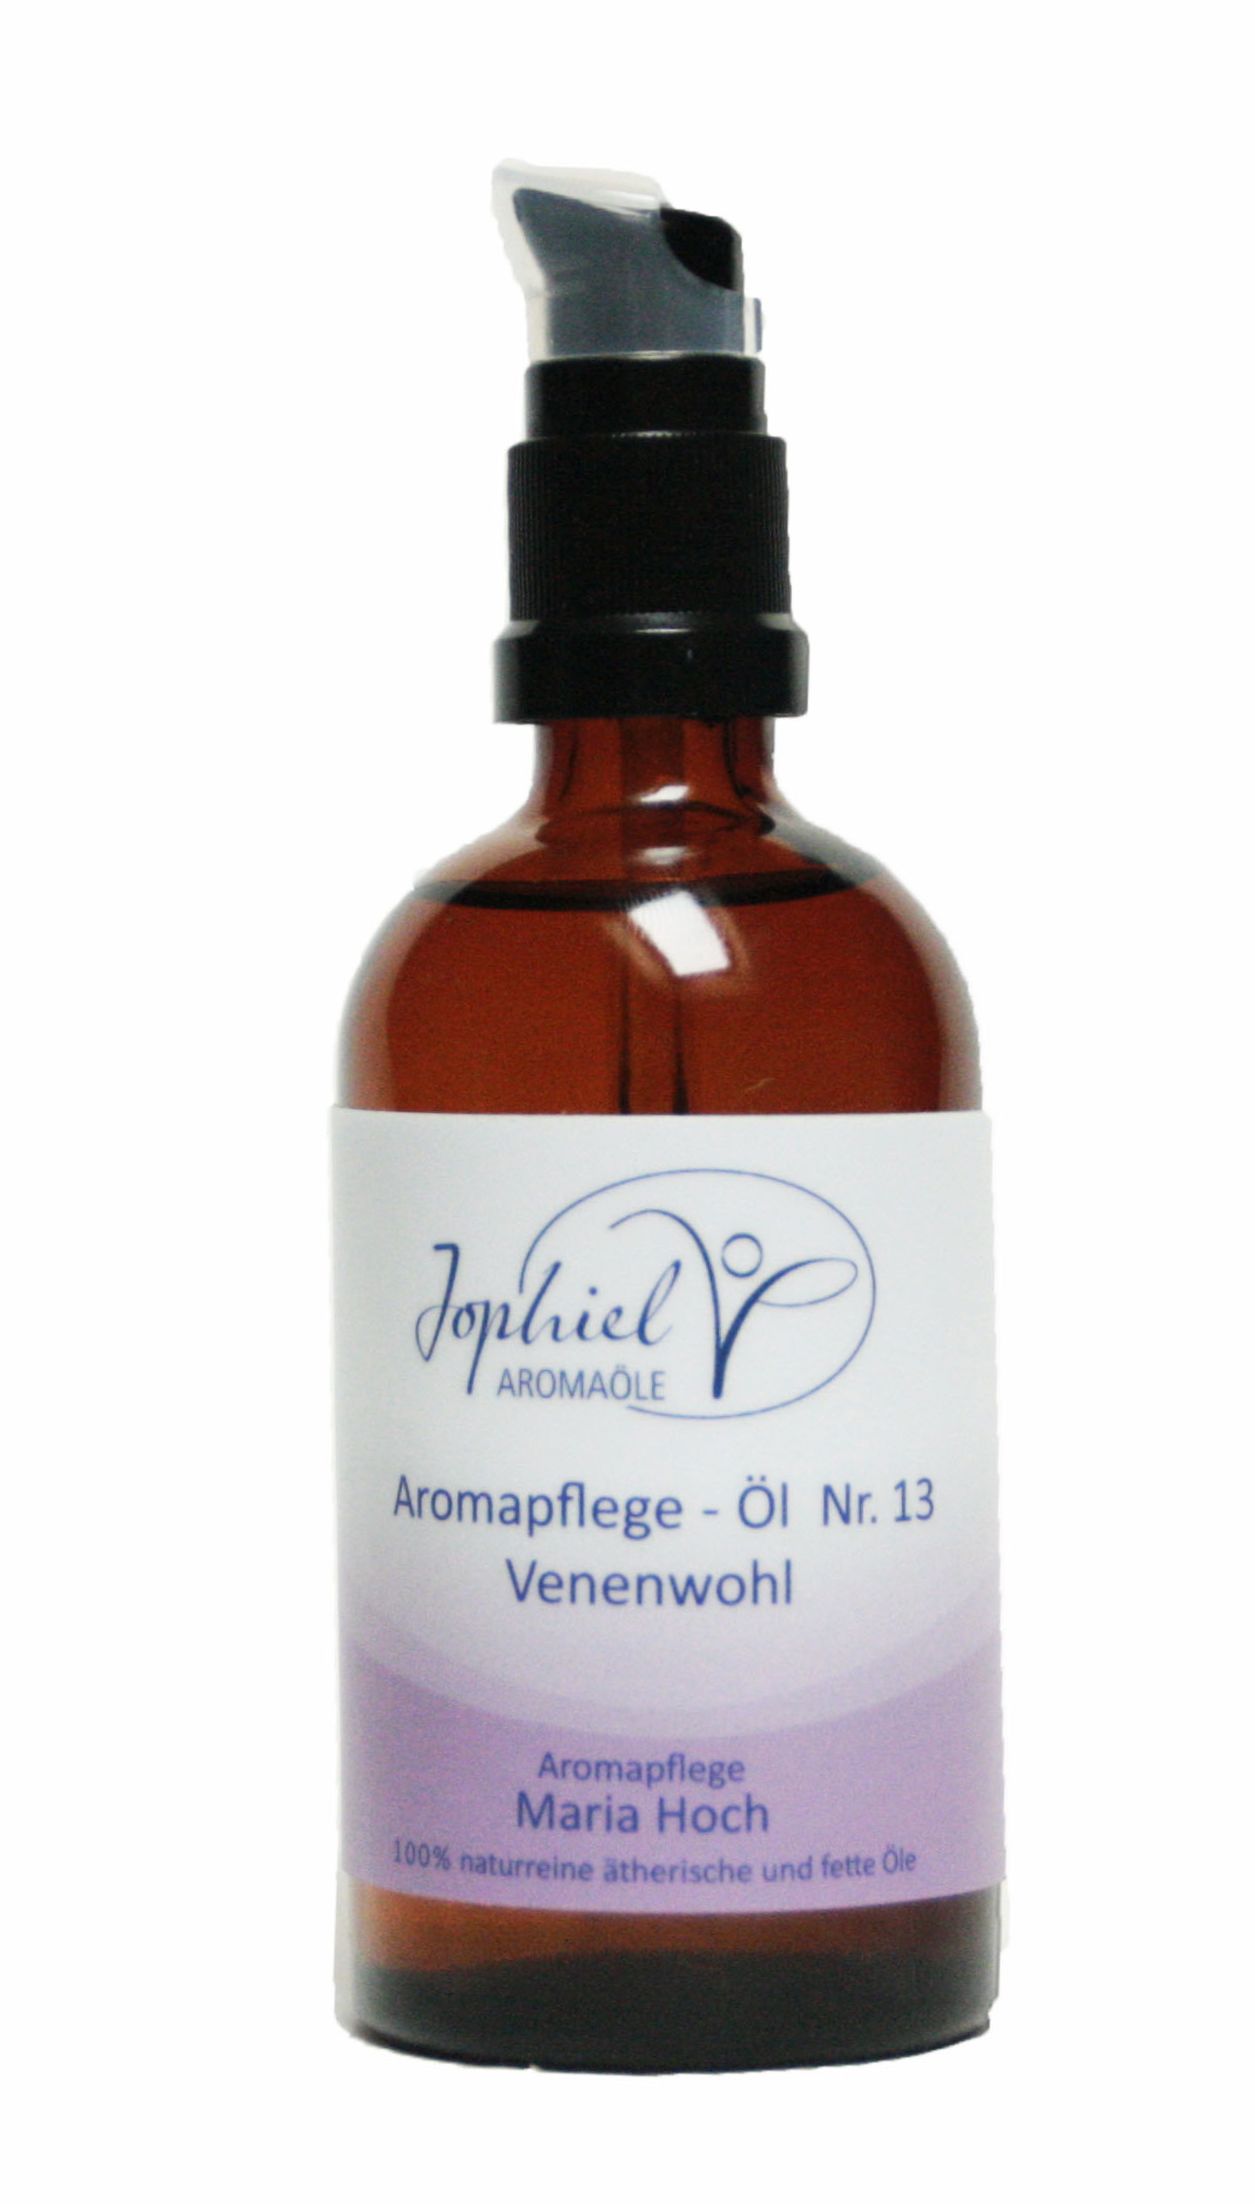 Aromapflege-Öl Nr. 13 Venenwohl  100 ml  Bio